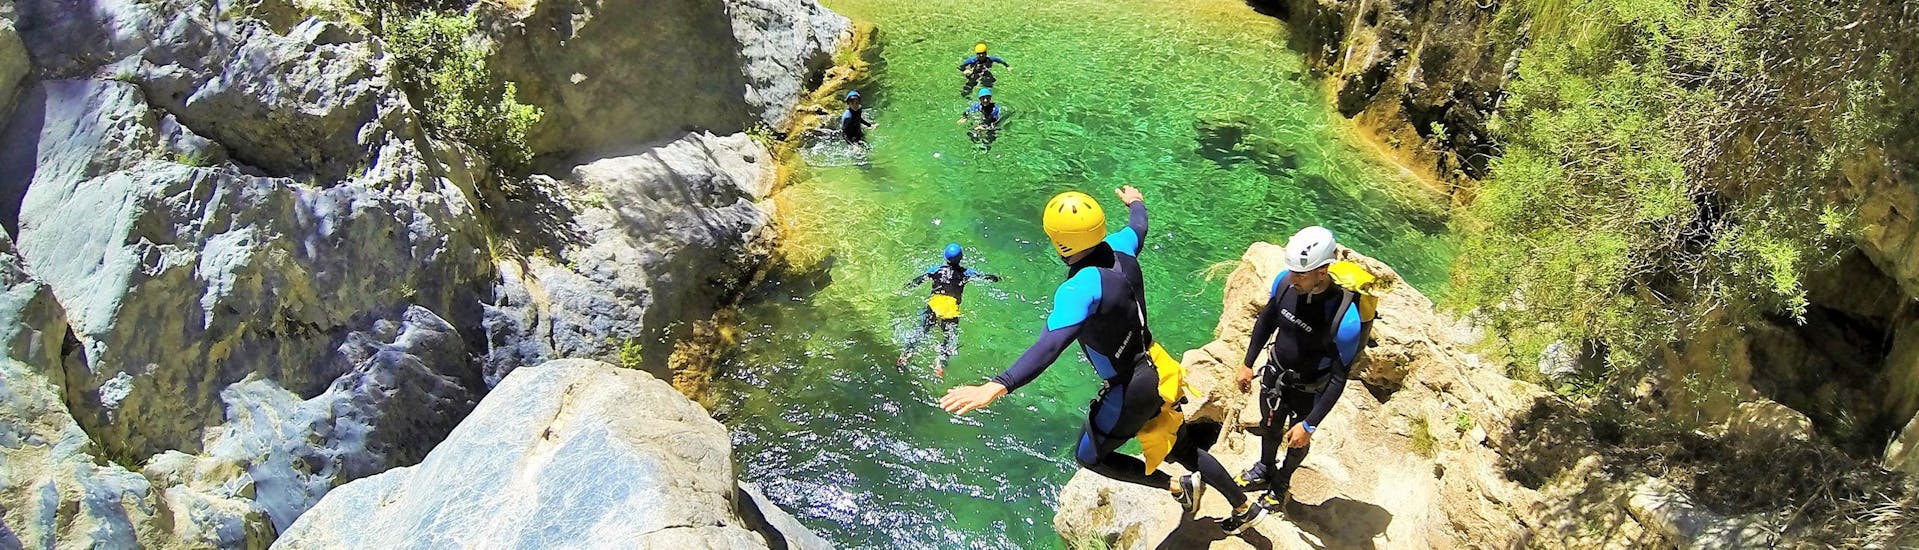 Eine Gruppe von Freunden springt von der Klippe in die klasklaren Gewässer während der Canyoning fortgeschrittenen Tour im Rio Verde von Barranquismo Rio Verde.